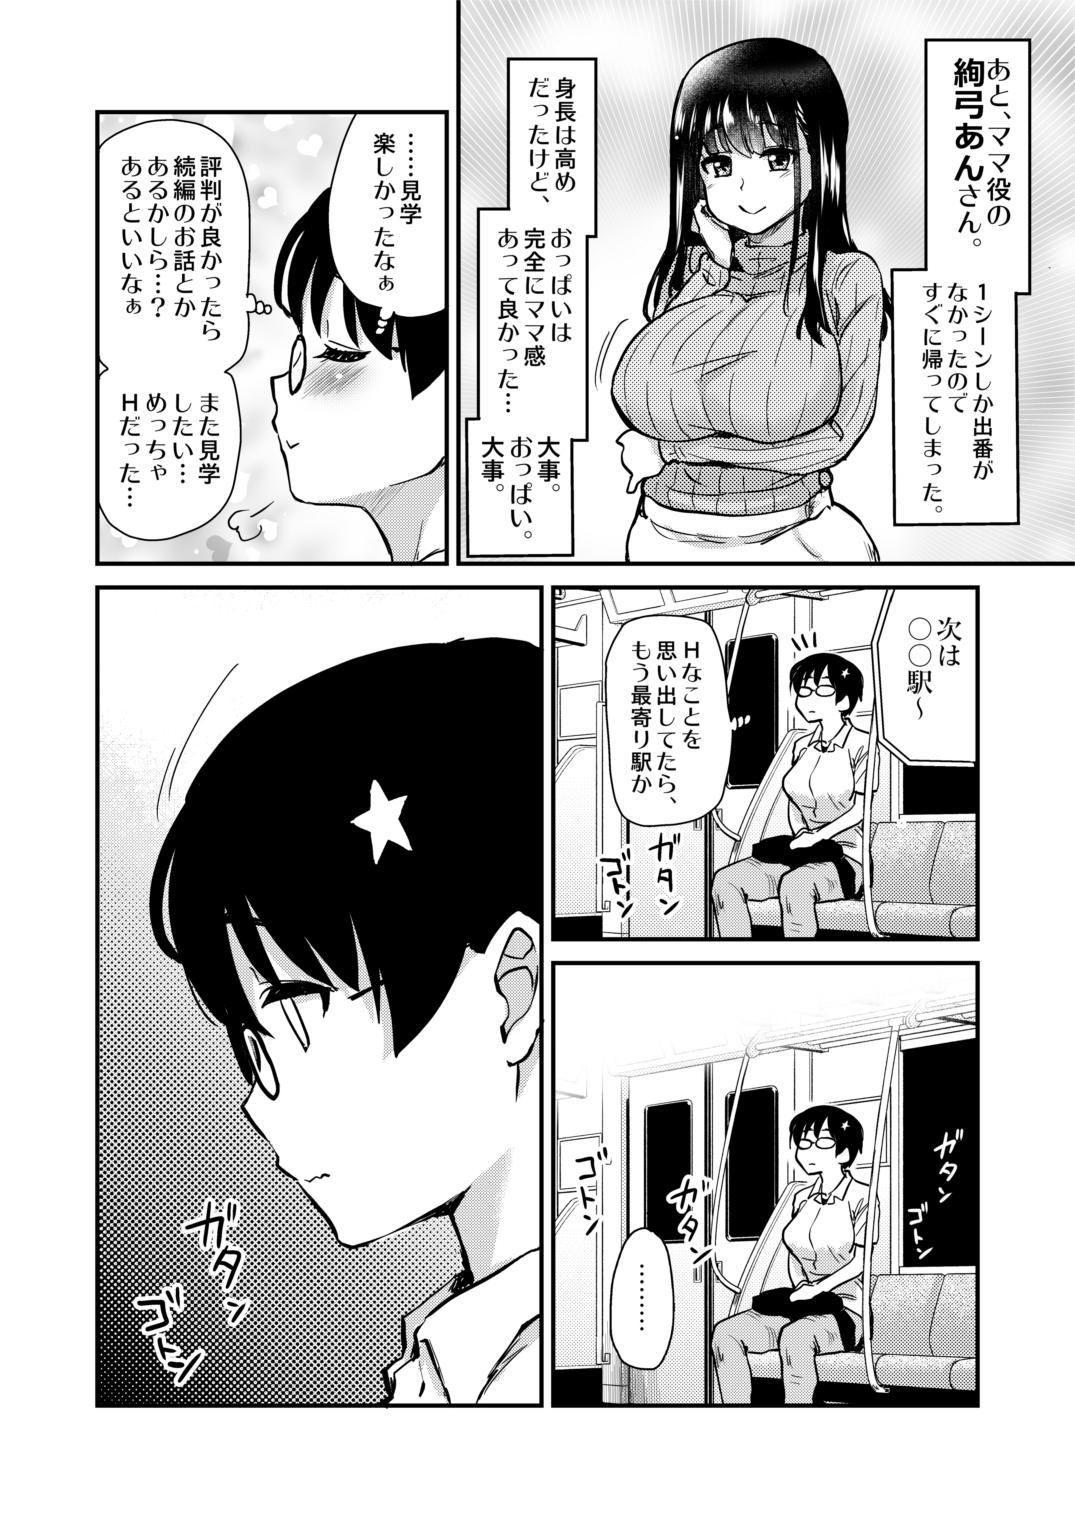 Jibun no Kaita Manga ga Jissha AV ni!? Sekkaku nano de Satsuei Genba no Kengaku ni Ittekimashita. 25